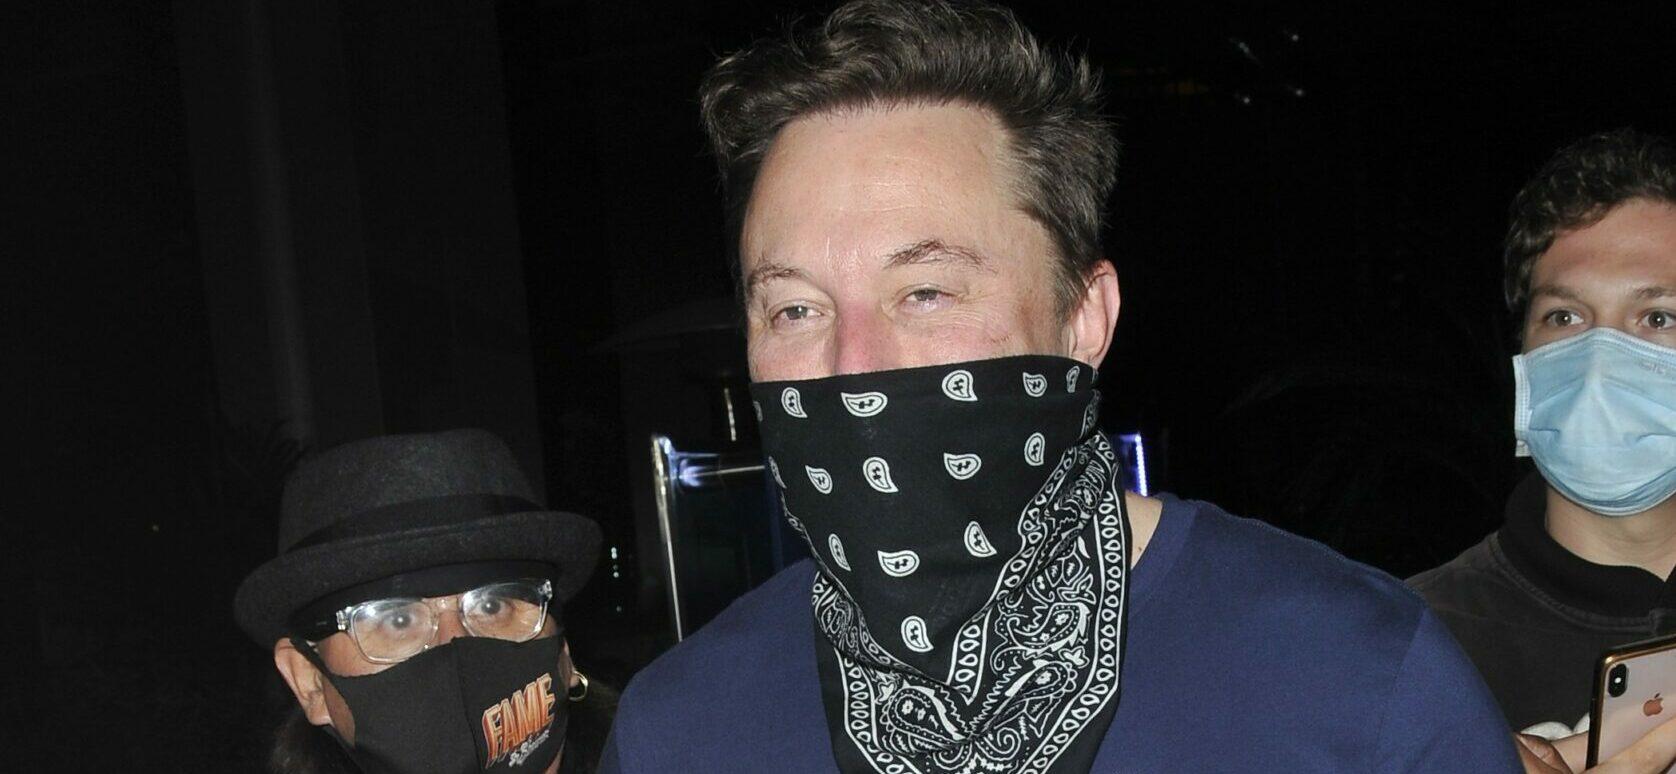 Elon Musk at BOA steakhouse for dinner